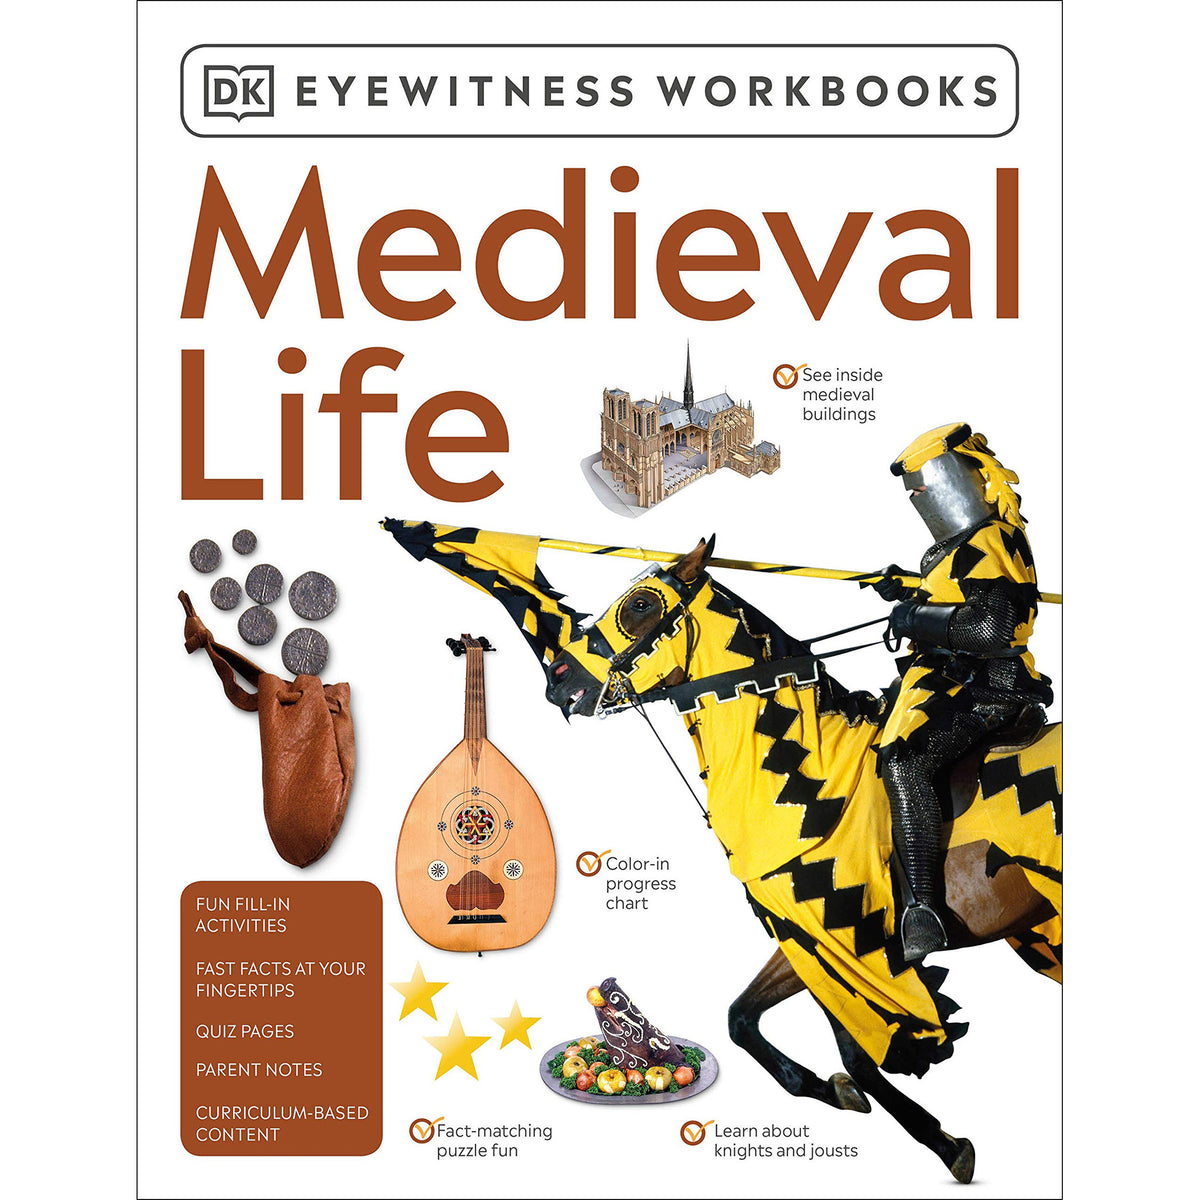 Medieval Life - Eyewitness Workbook